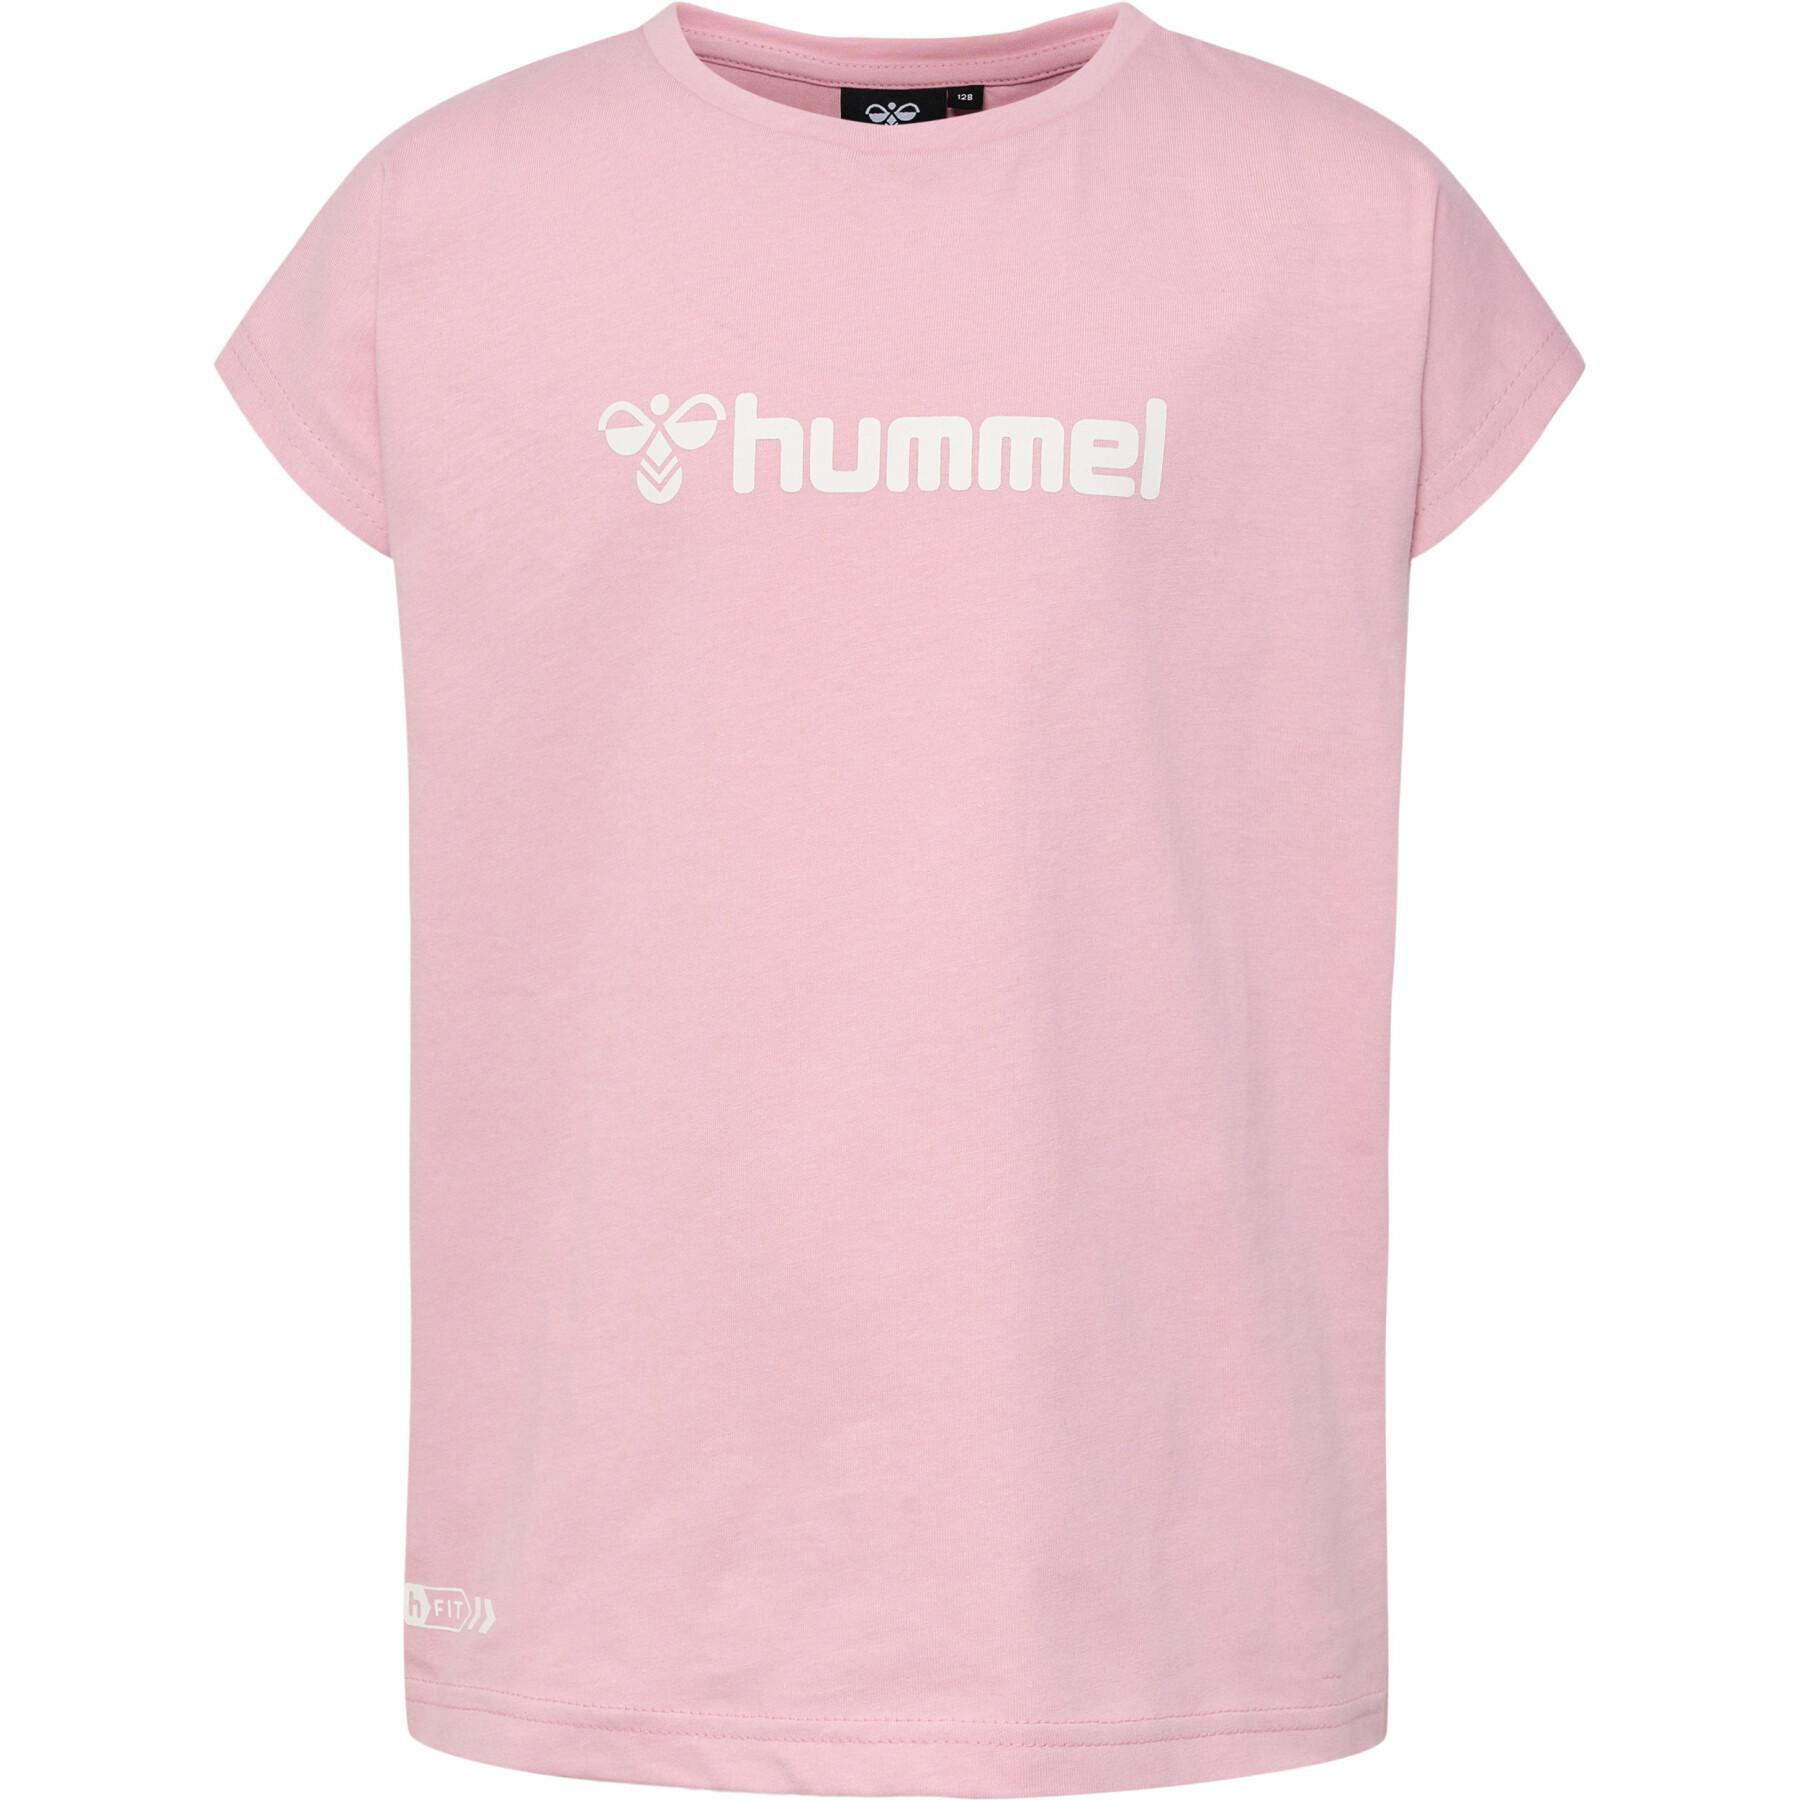 Shorts för flickor Hummel nova